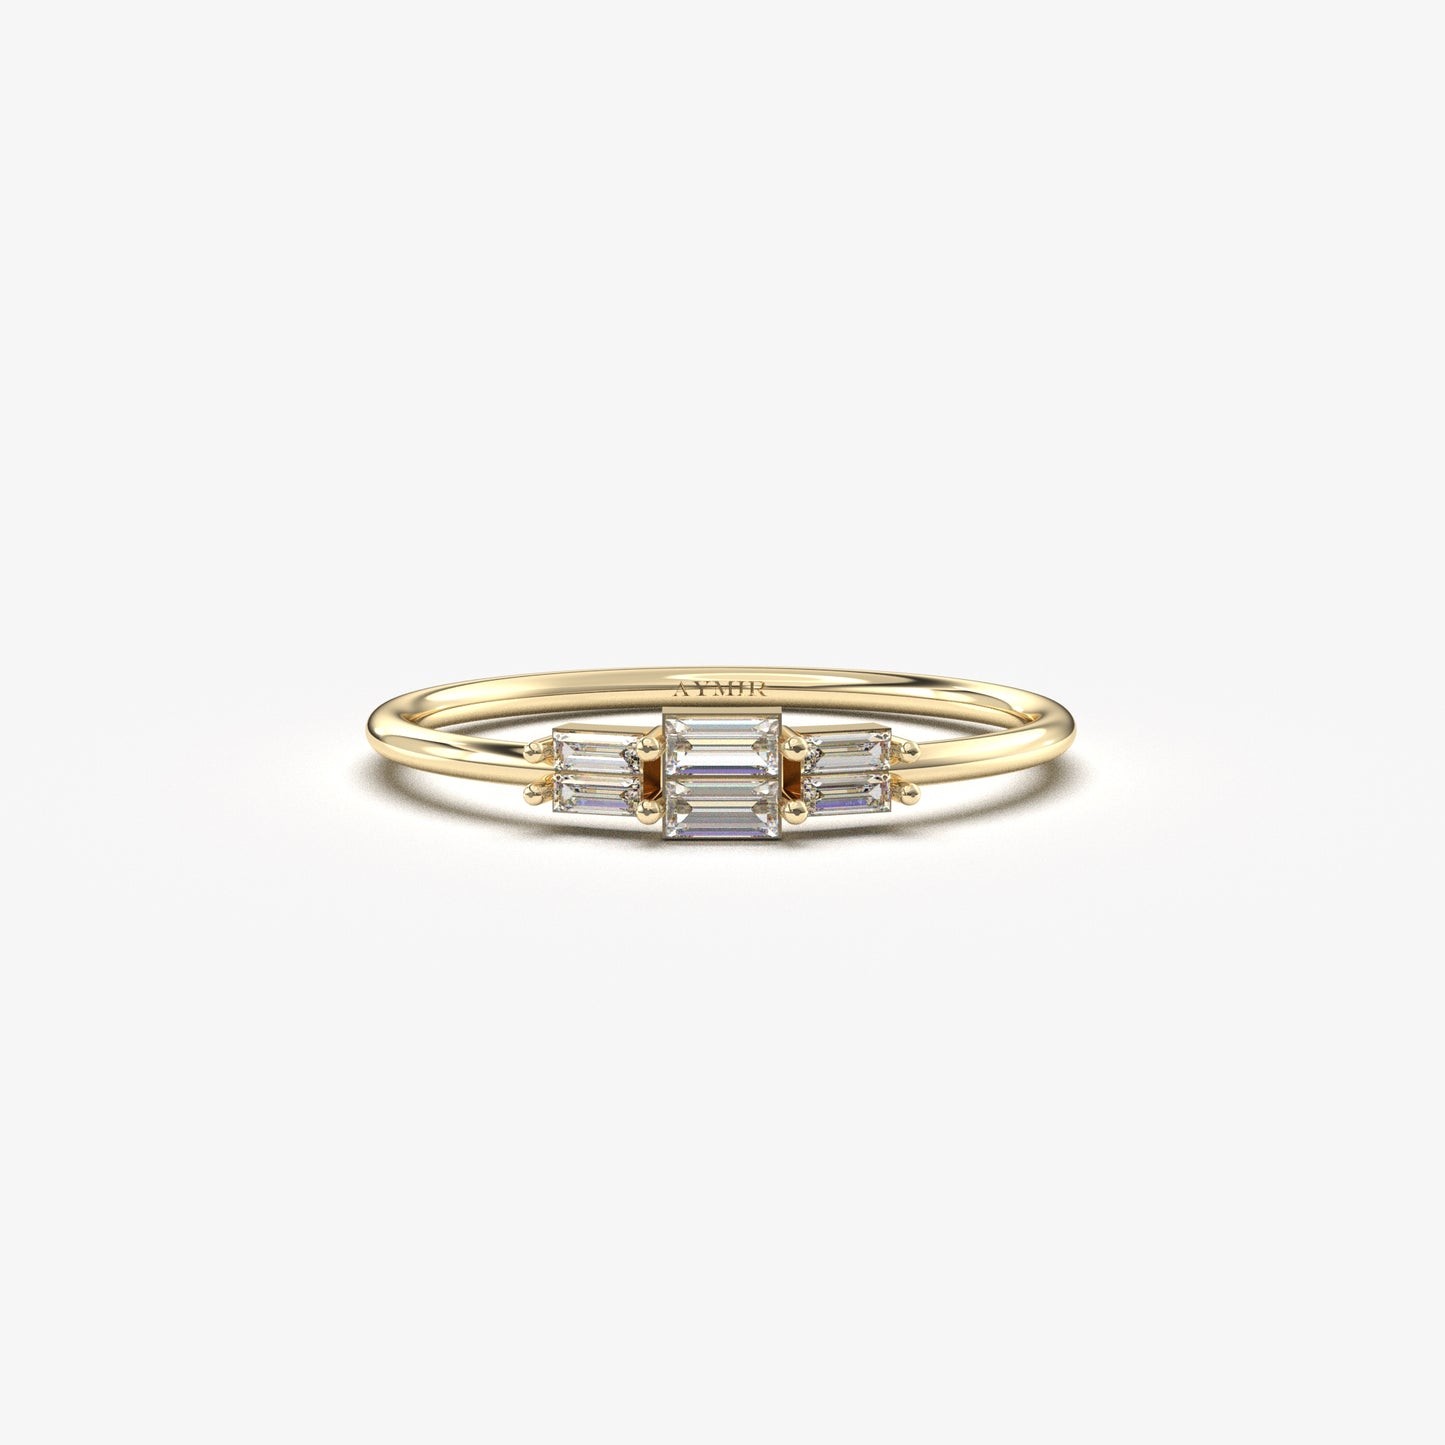 18K Gold Baguette Promise Ring - 2S160